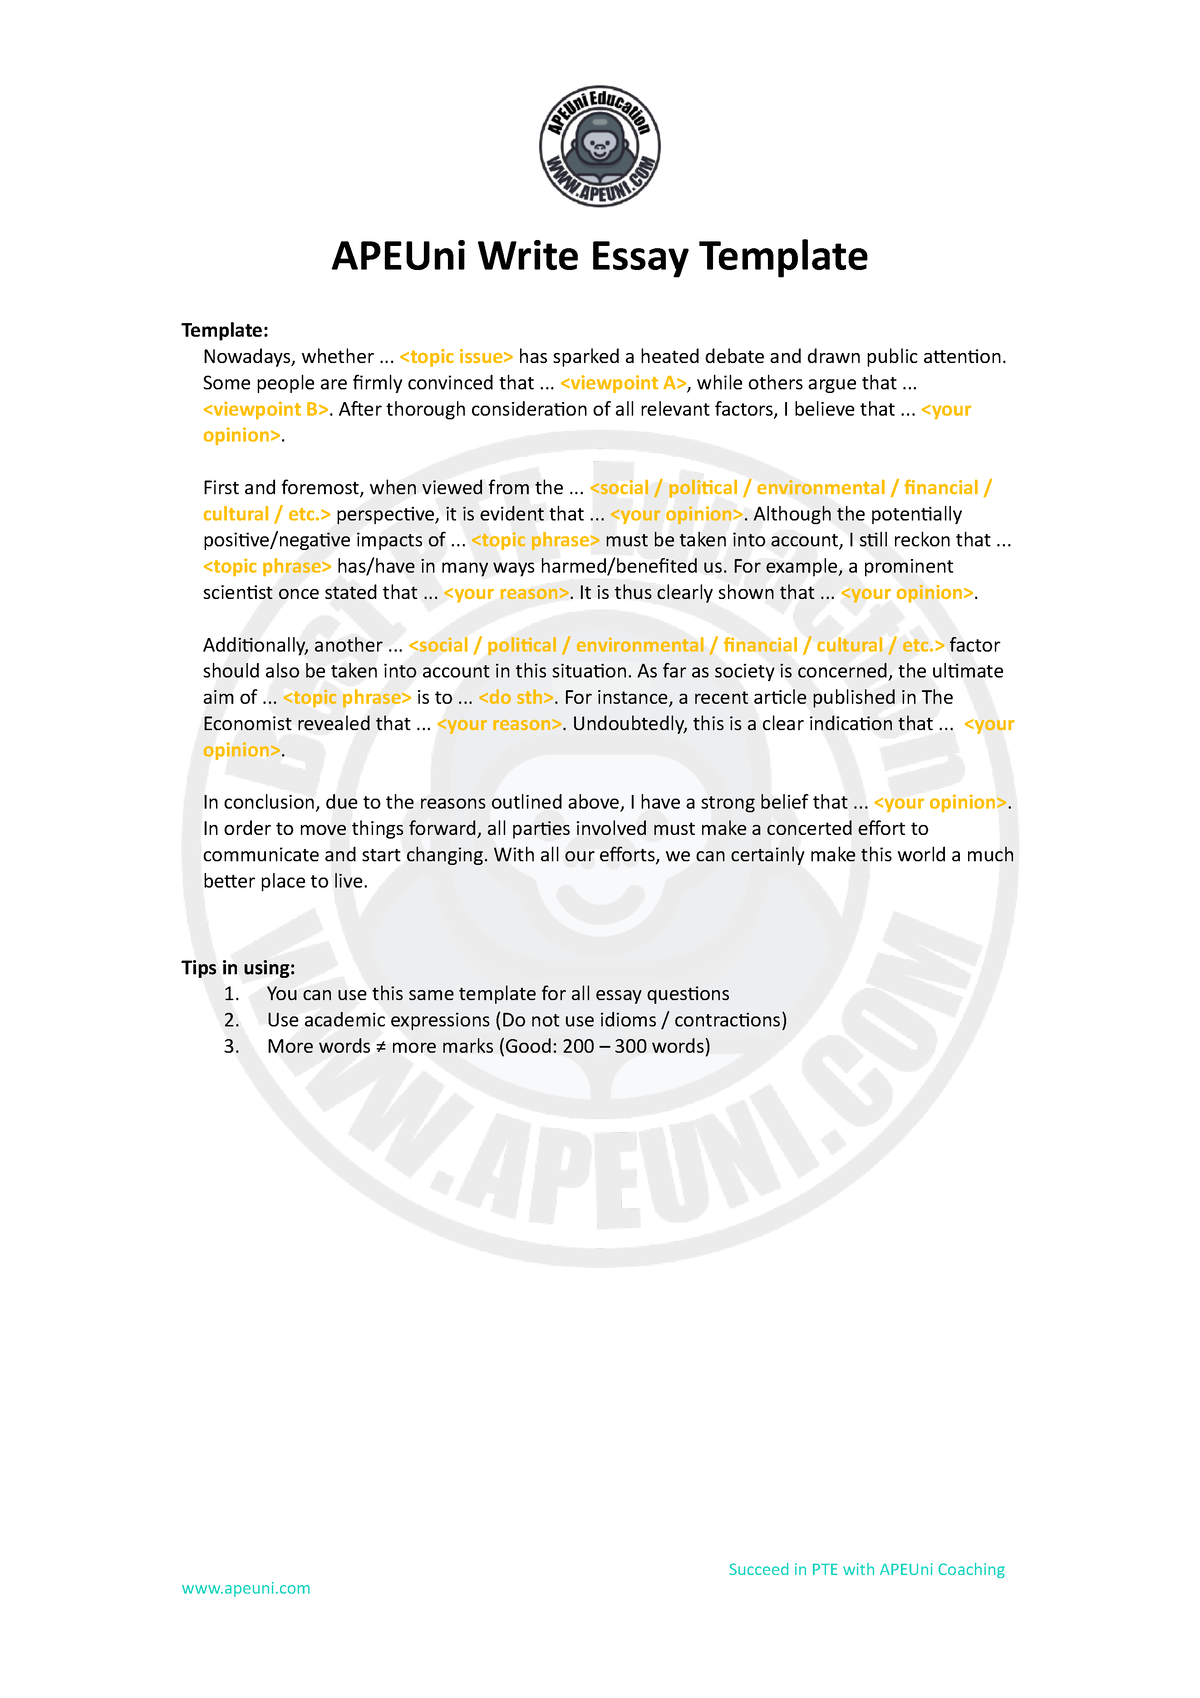 apeuni-write-essay-template-succeed-in-pte-with-apeuni-coaching-apeuni-write-essay-template